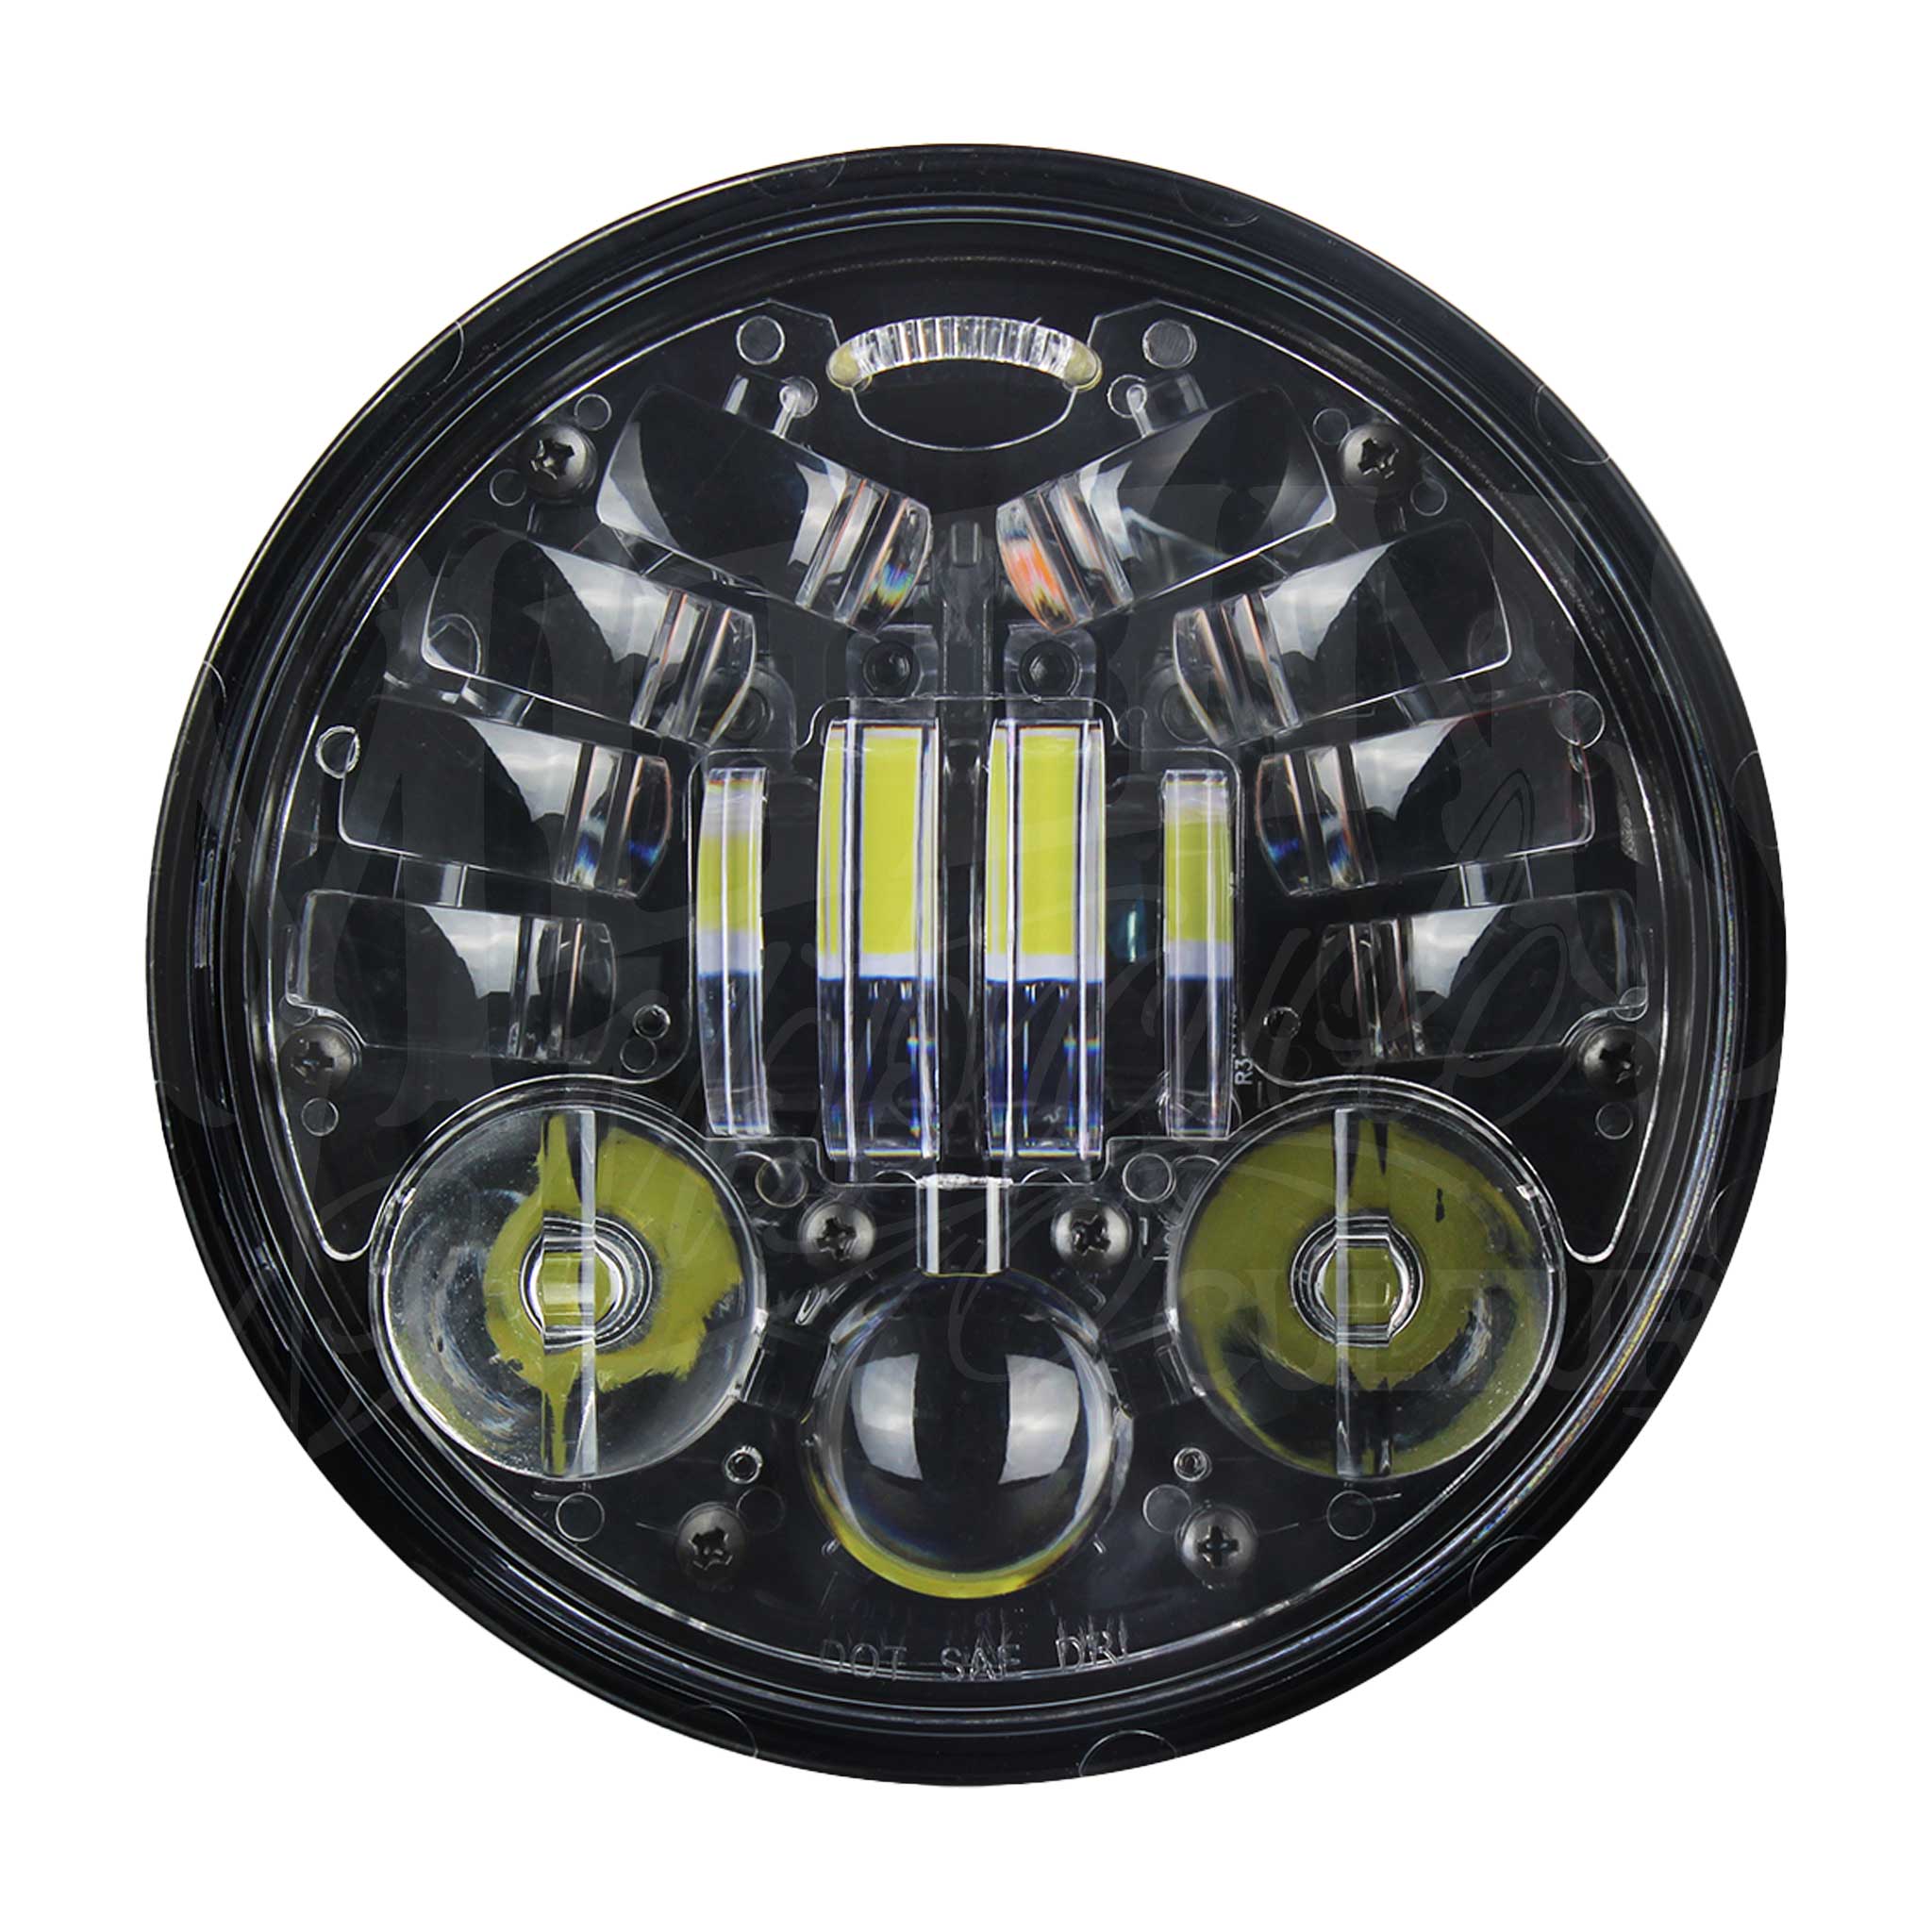 5.75 MOONSMC® Moonmaker 3 LED Headlight For Harley